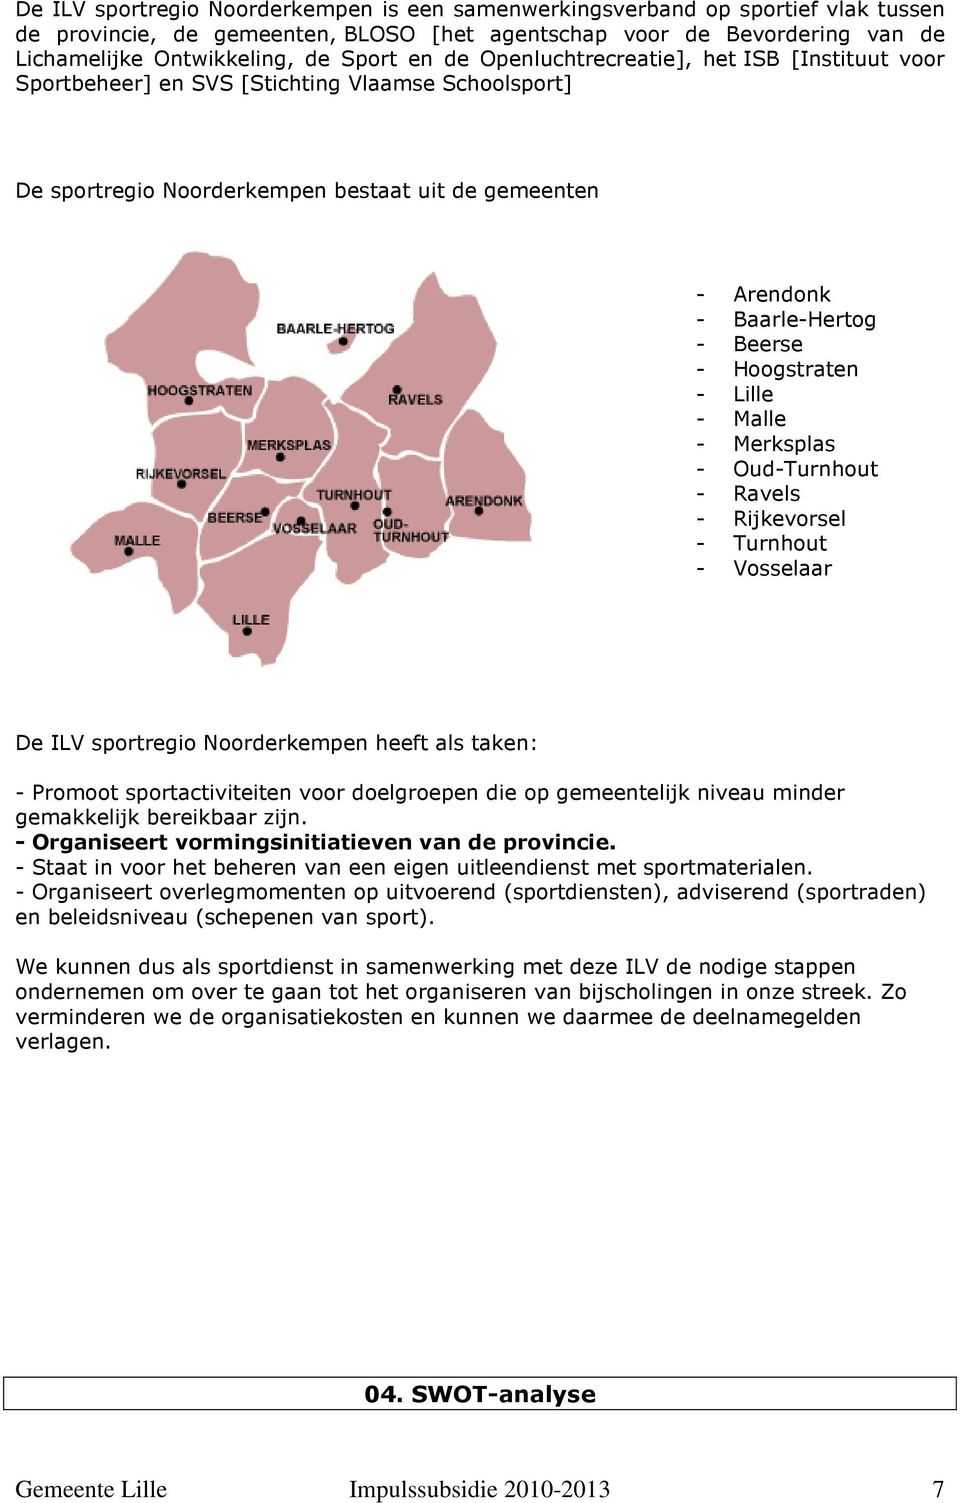 Hoogstraten - Lille - Malle - Merksplas - Oud-Turnhout - Ravels - Rijkevorsel - Turnhout - Vosselaar De ILV sportregio Noorderkempen heeft als taken: - Promoot sportactiviteiten voor doelgroepen die